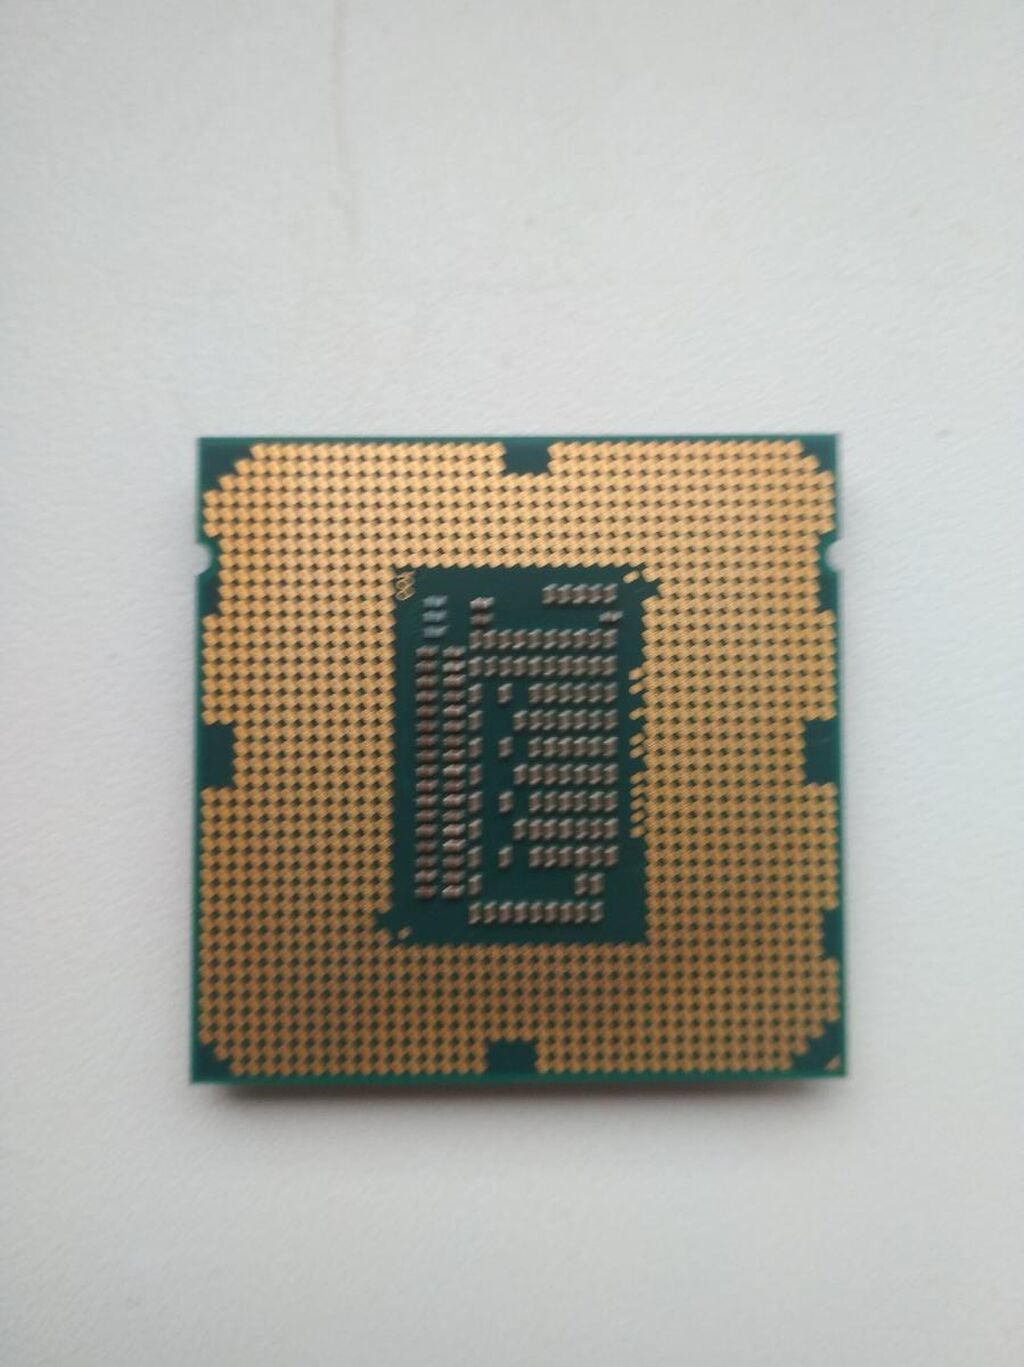 3570 сокет. Процессор Intel Core i5-3570 Ivy Bridge. Intel 3570 сокет. Процессор Intel Core i5-3570t Ivy Bridge. Процессор Intel Core i5-3570s Ivy Bridge.